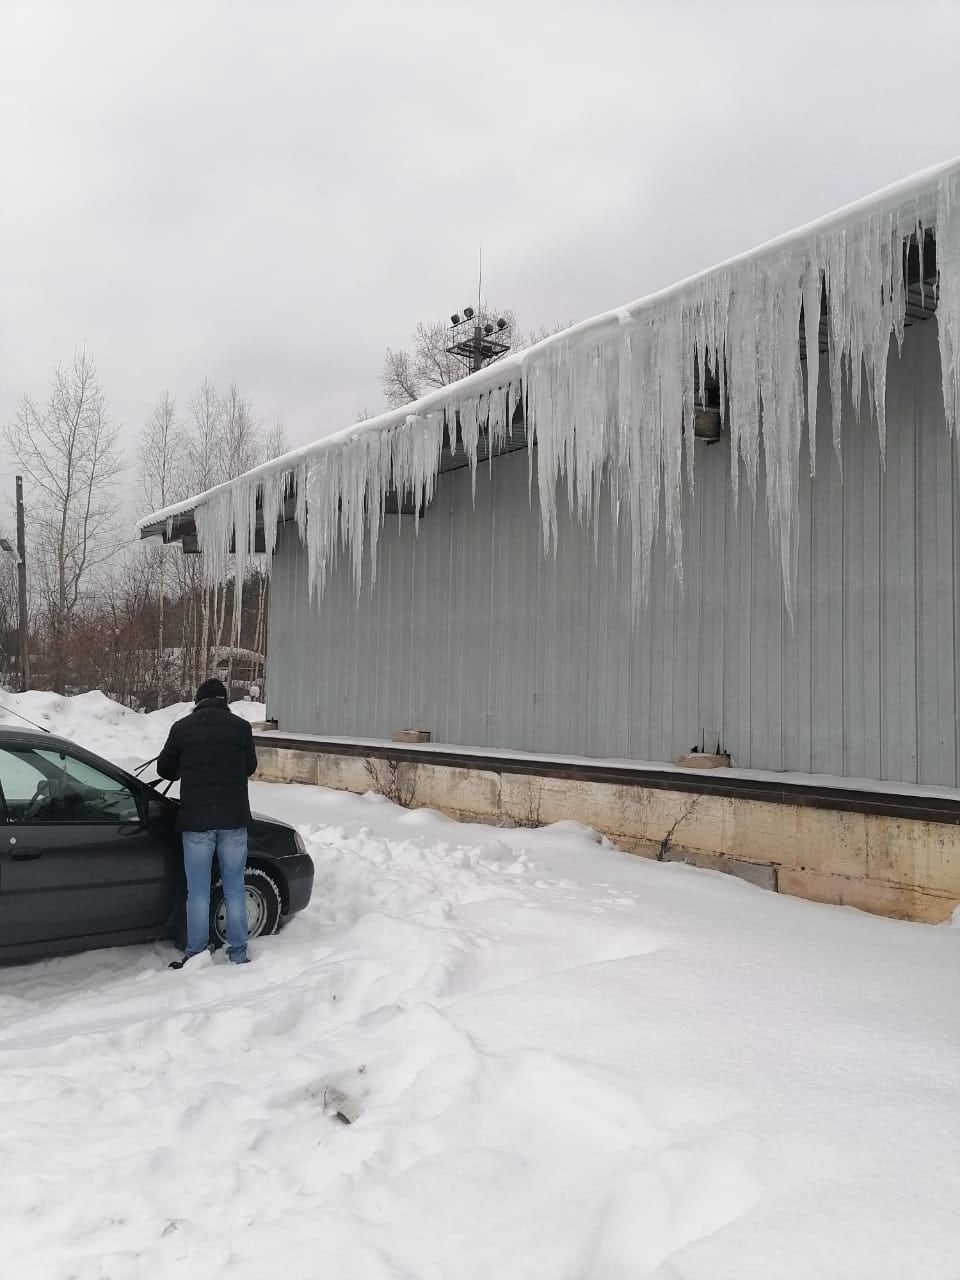 "Осторожно, сход снега": кировчан предупреждают об опасности в период оттепели